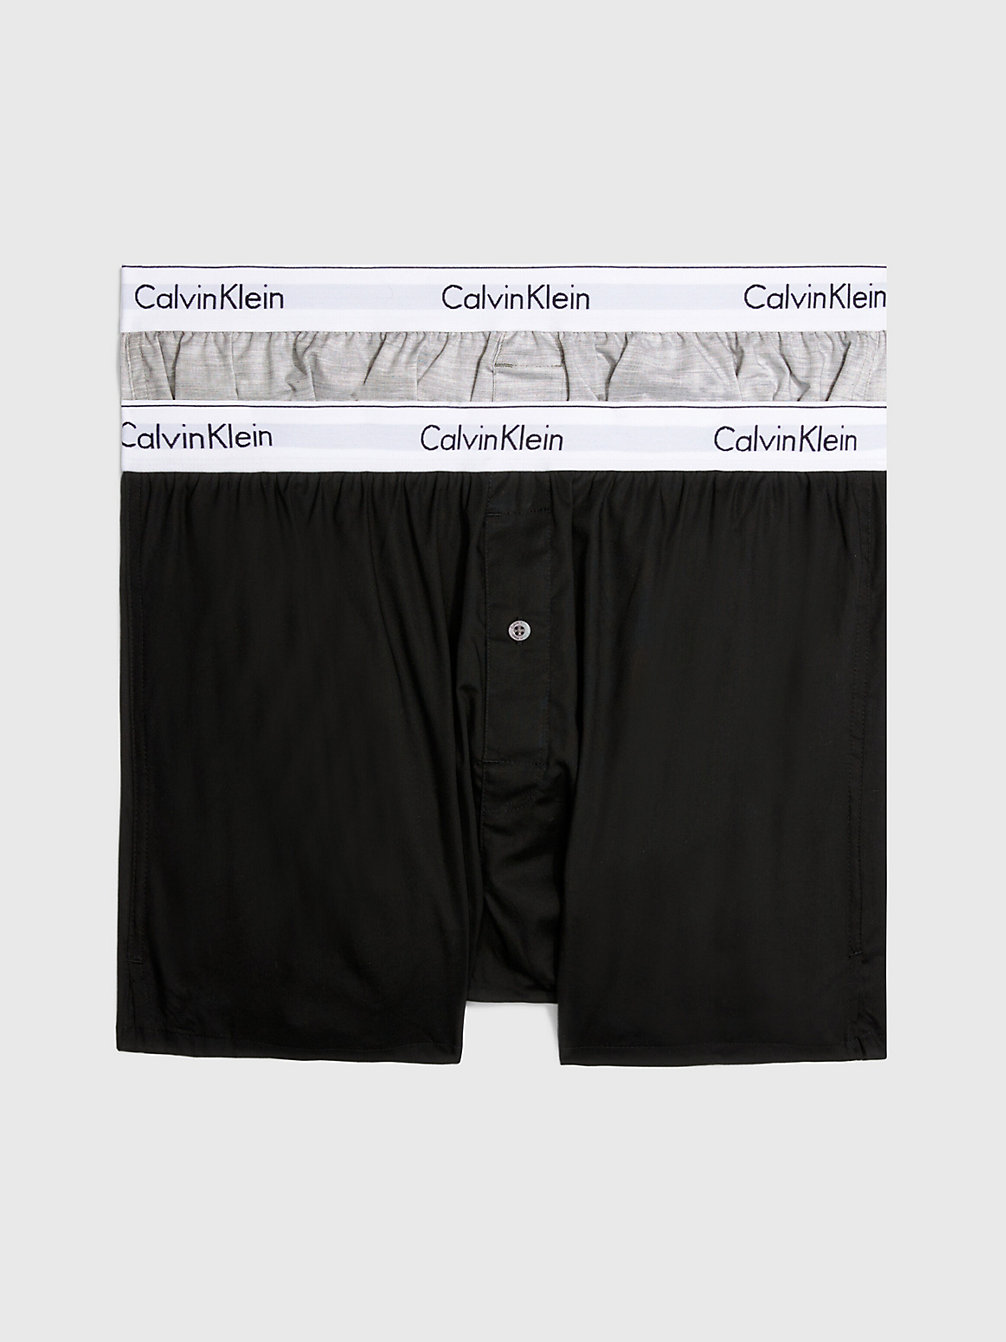 BLACK/GREY HEATHER 2er-Pack Slim Fit Boxershorts - Modern Cotton undefined Herren Calvin Klein